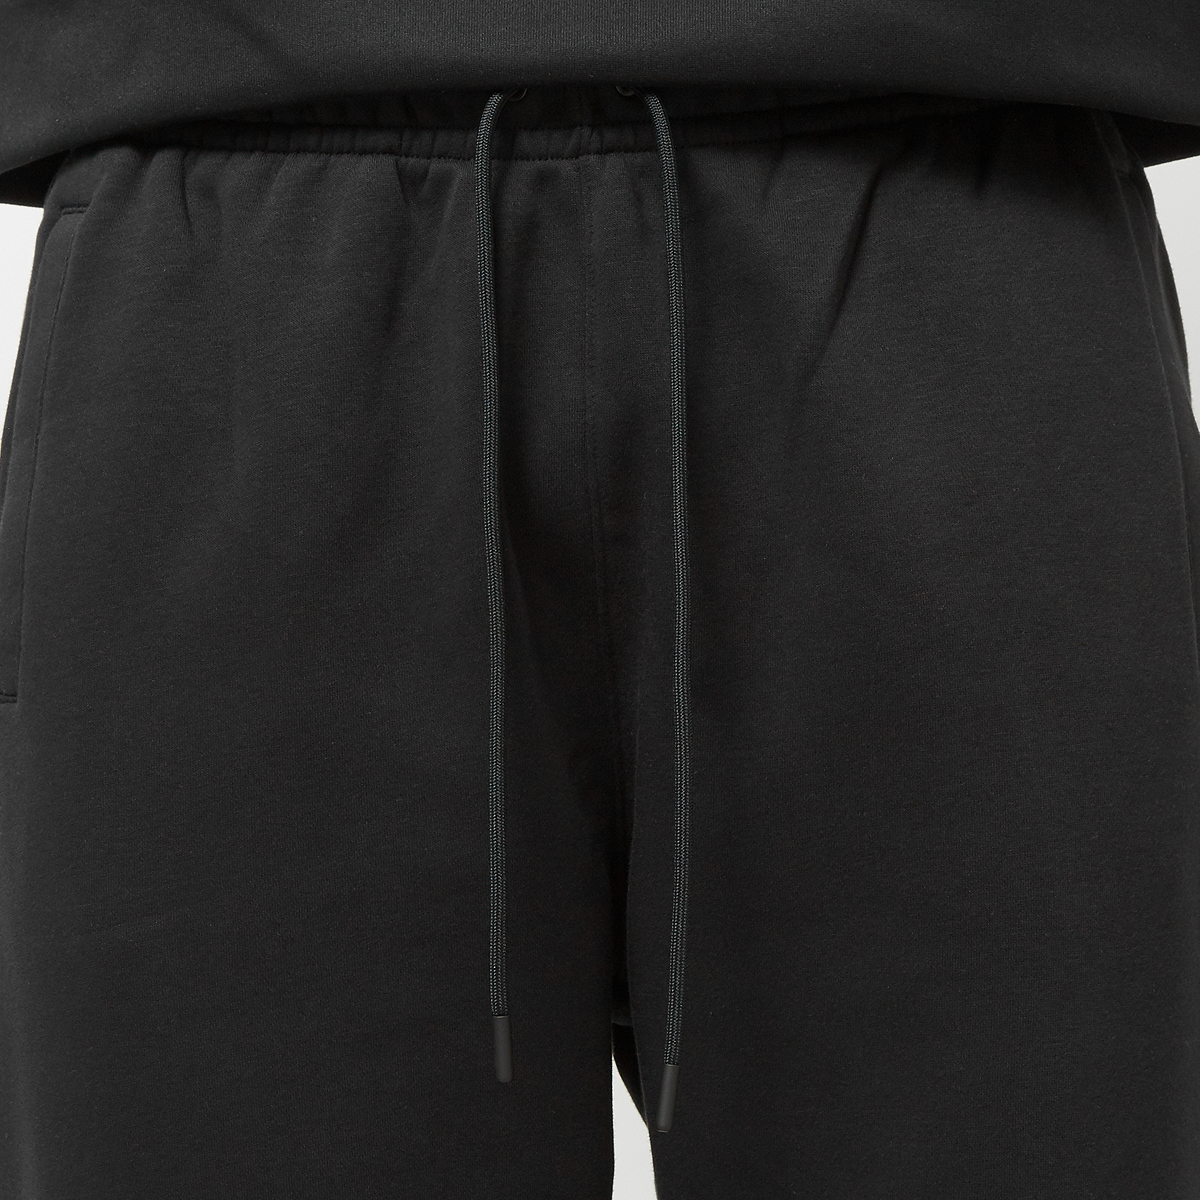 Jordan Essentials Fleece Baseline Pants Trainingsbroeken Heren black gold maat: S beschikbare maaten:S